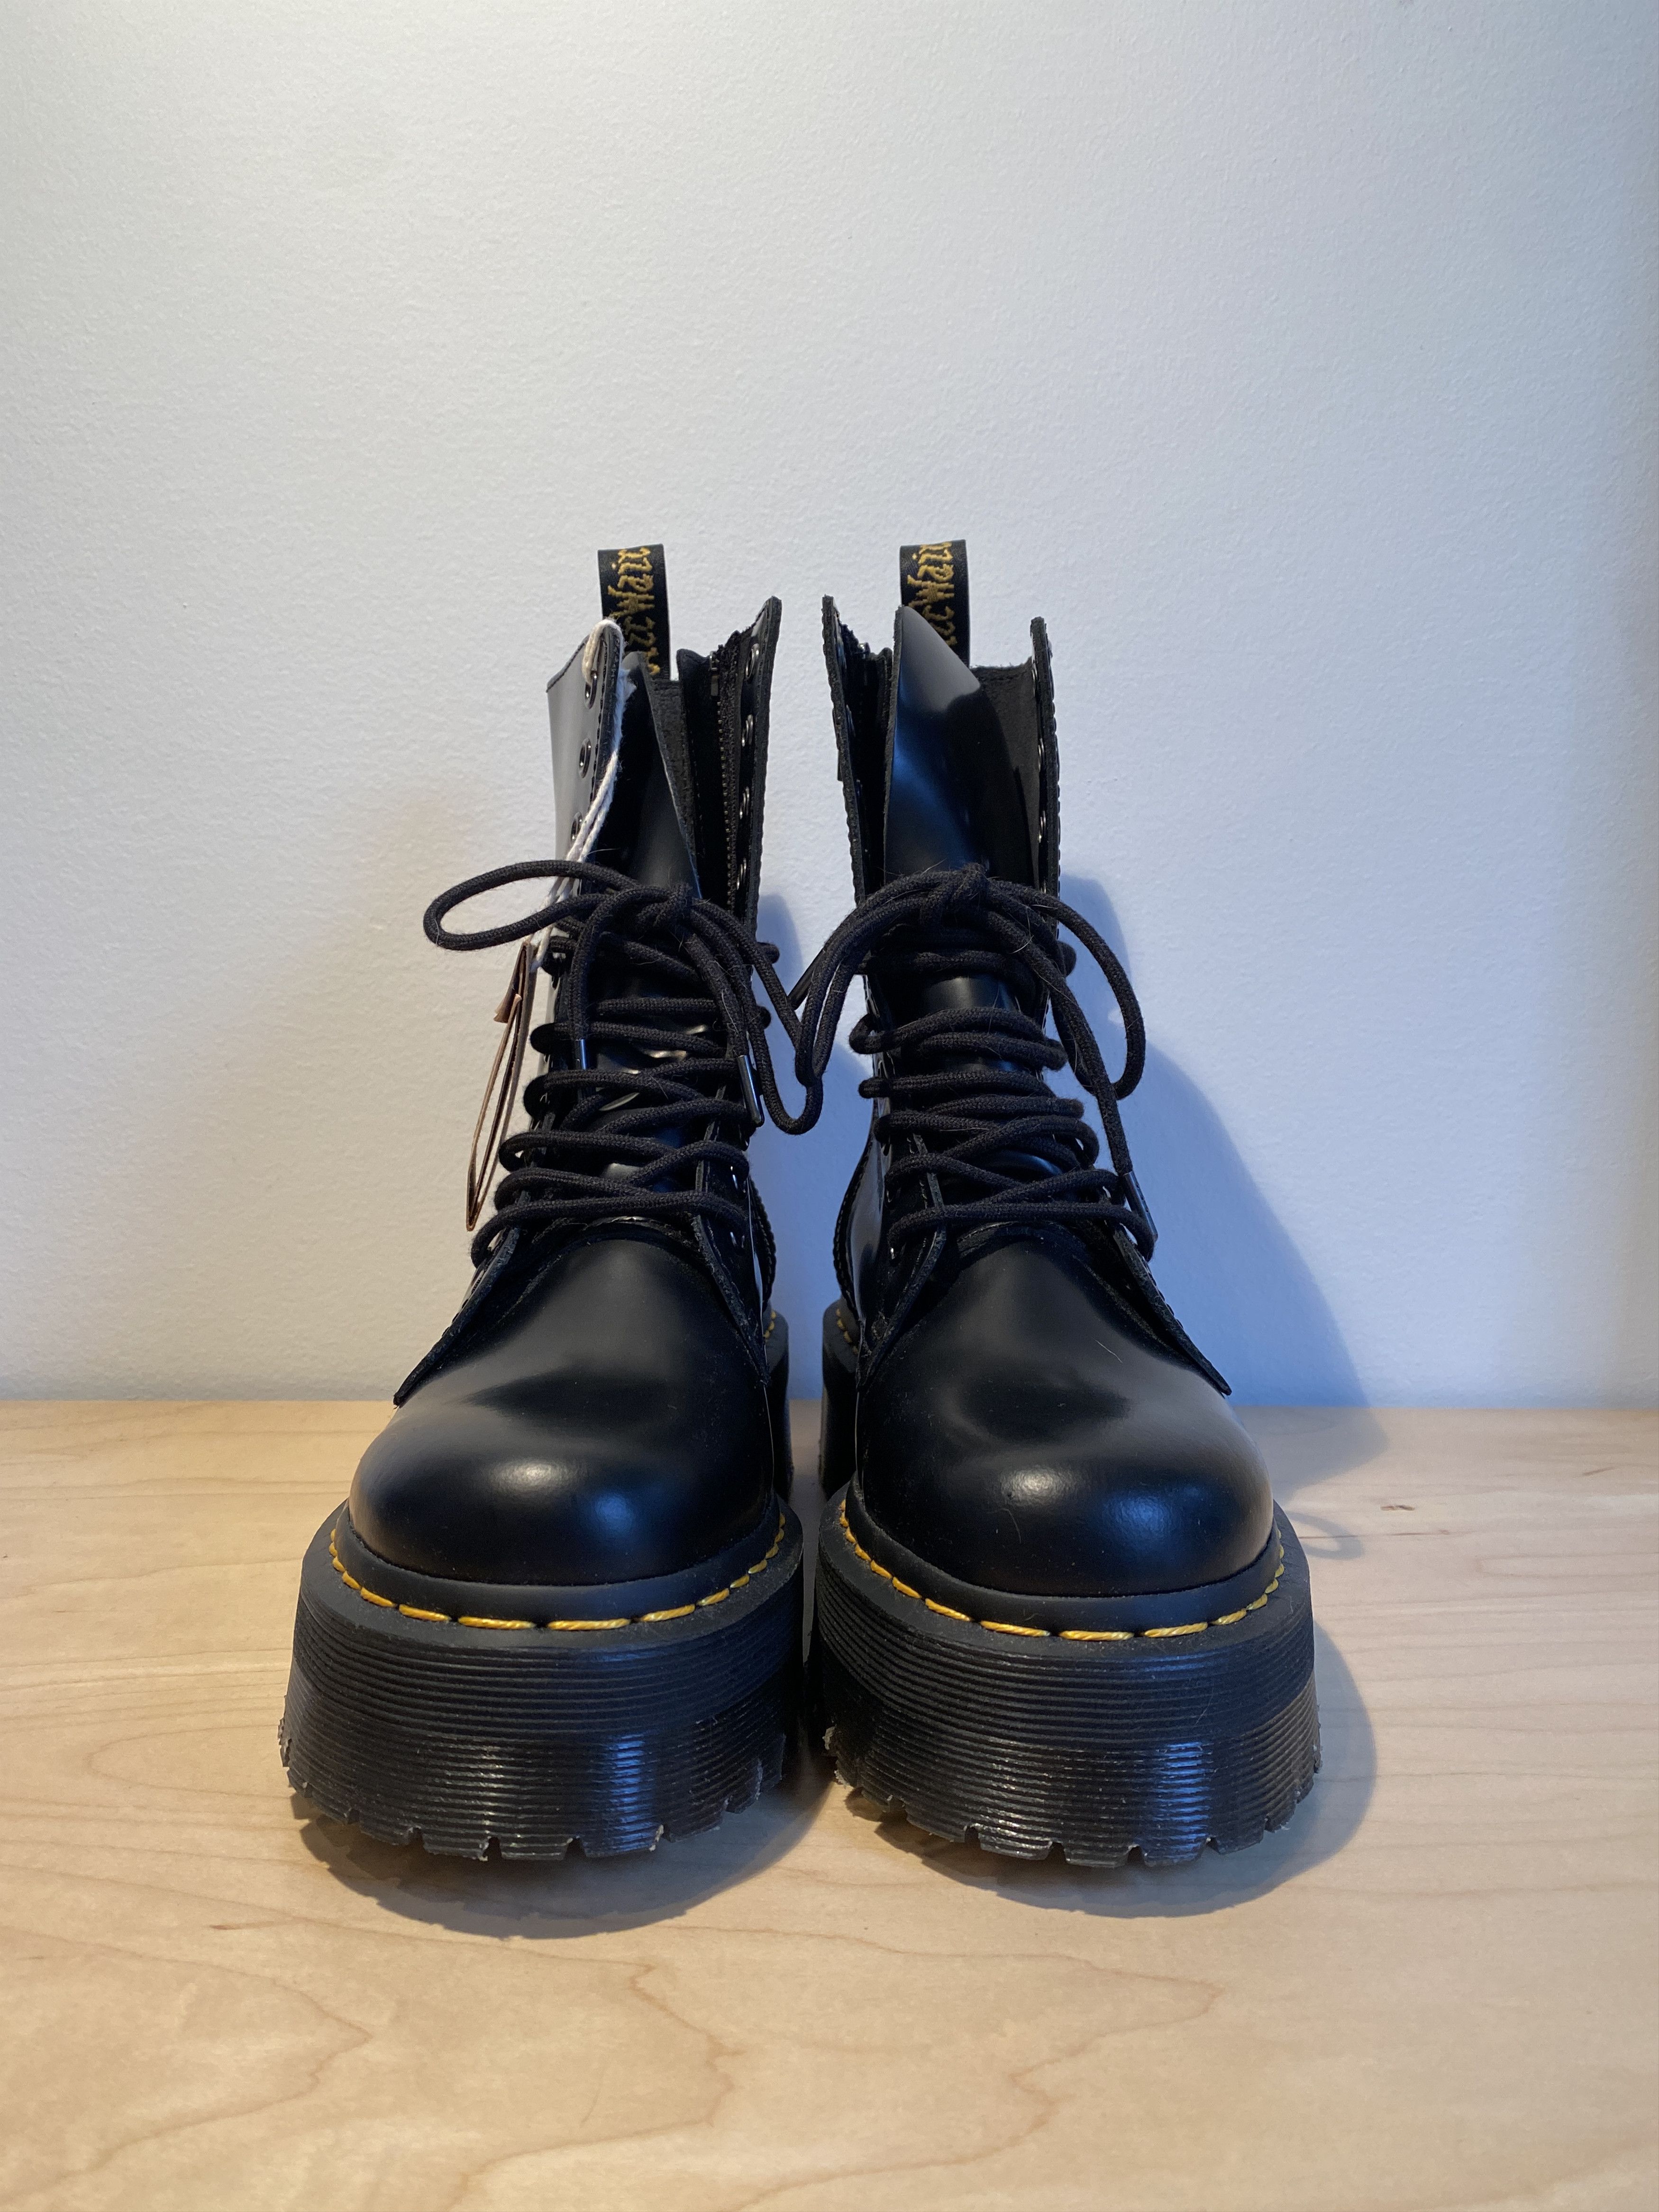 Dr. Martens Dr. Martens Jadon Hi Smooth Leather Platform Boots Size US 6 / EU 39 - 2 Preview